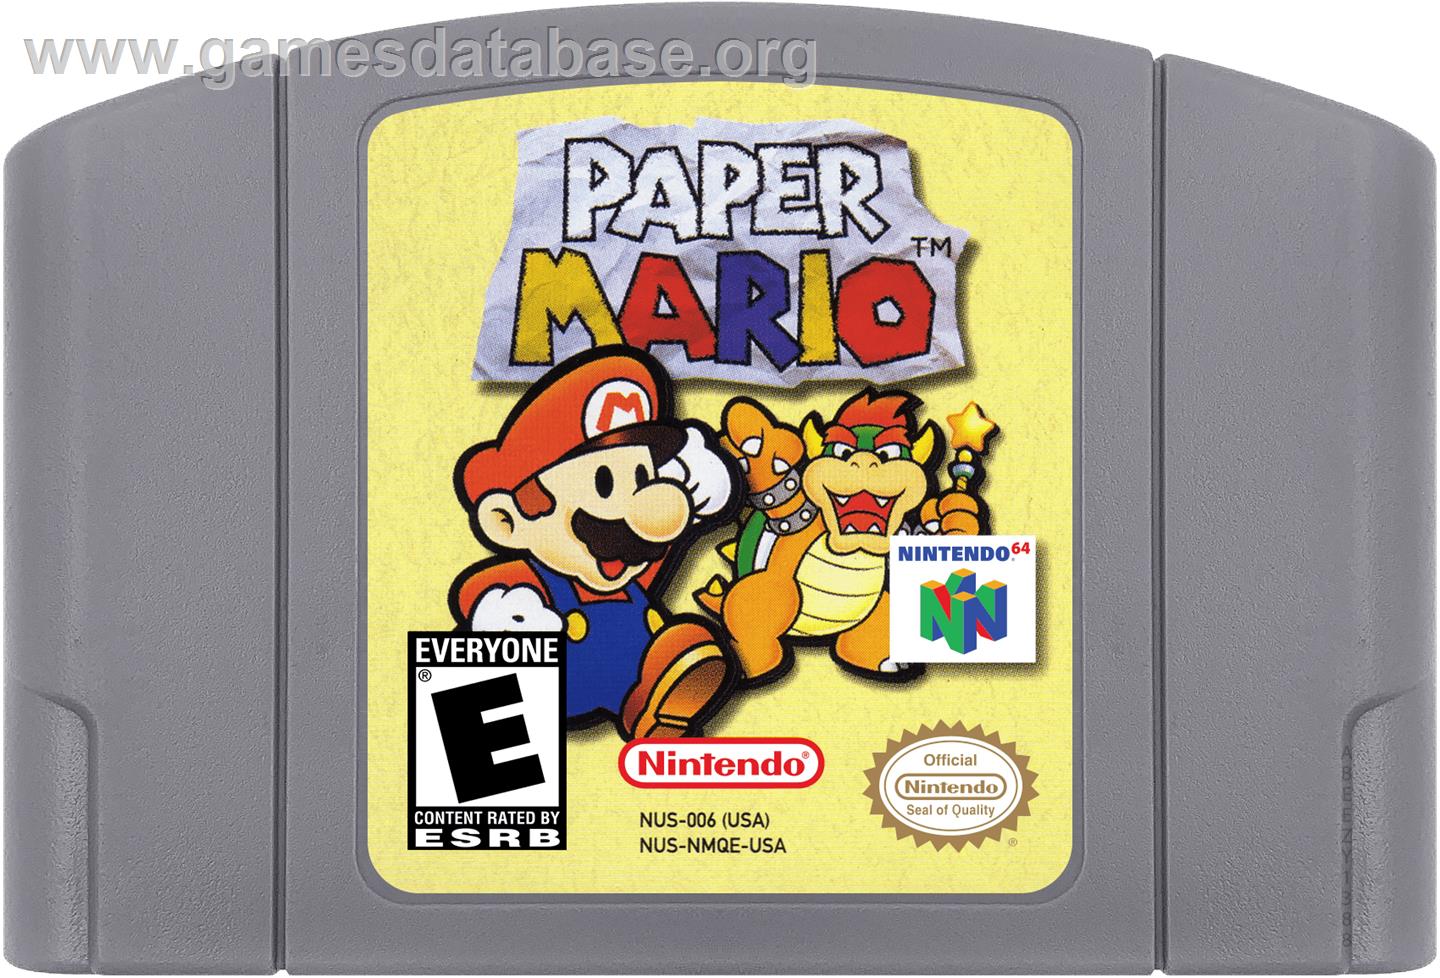 Paper Mario - Nintendo N64 - Artwork - Cartridge